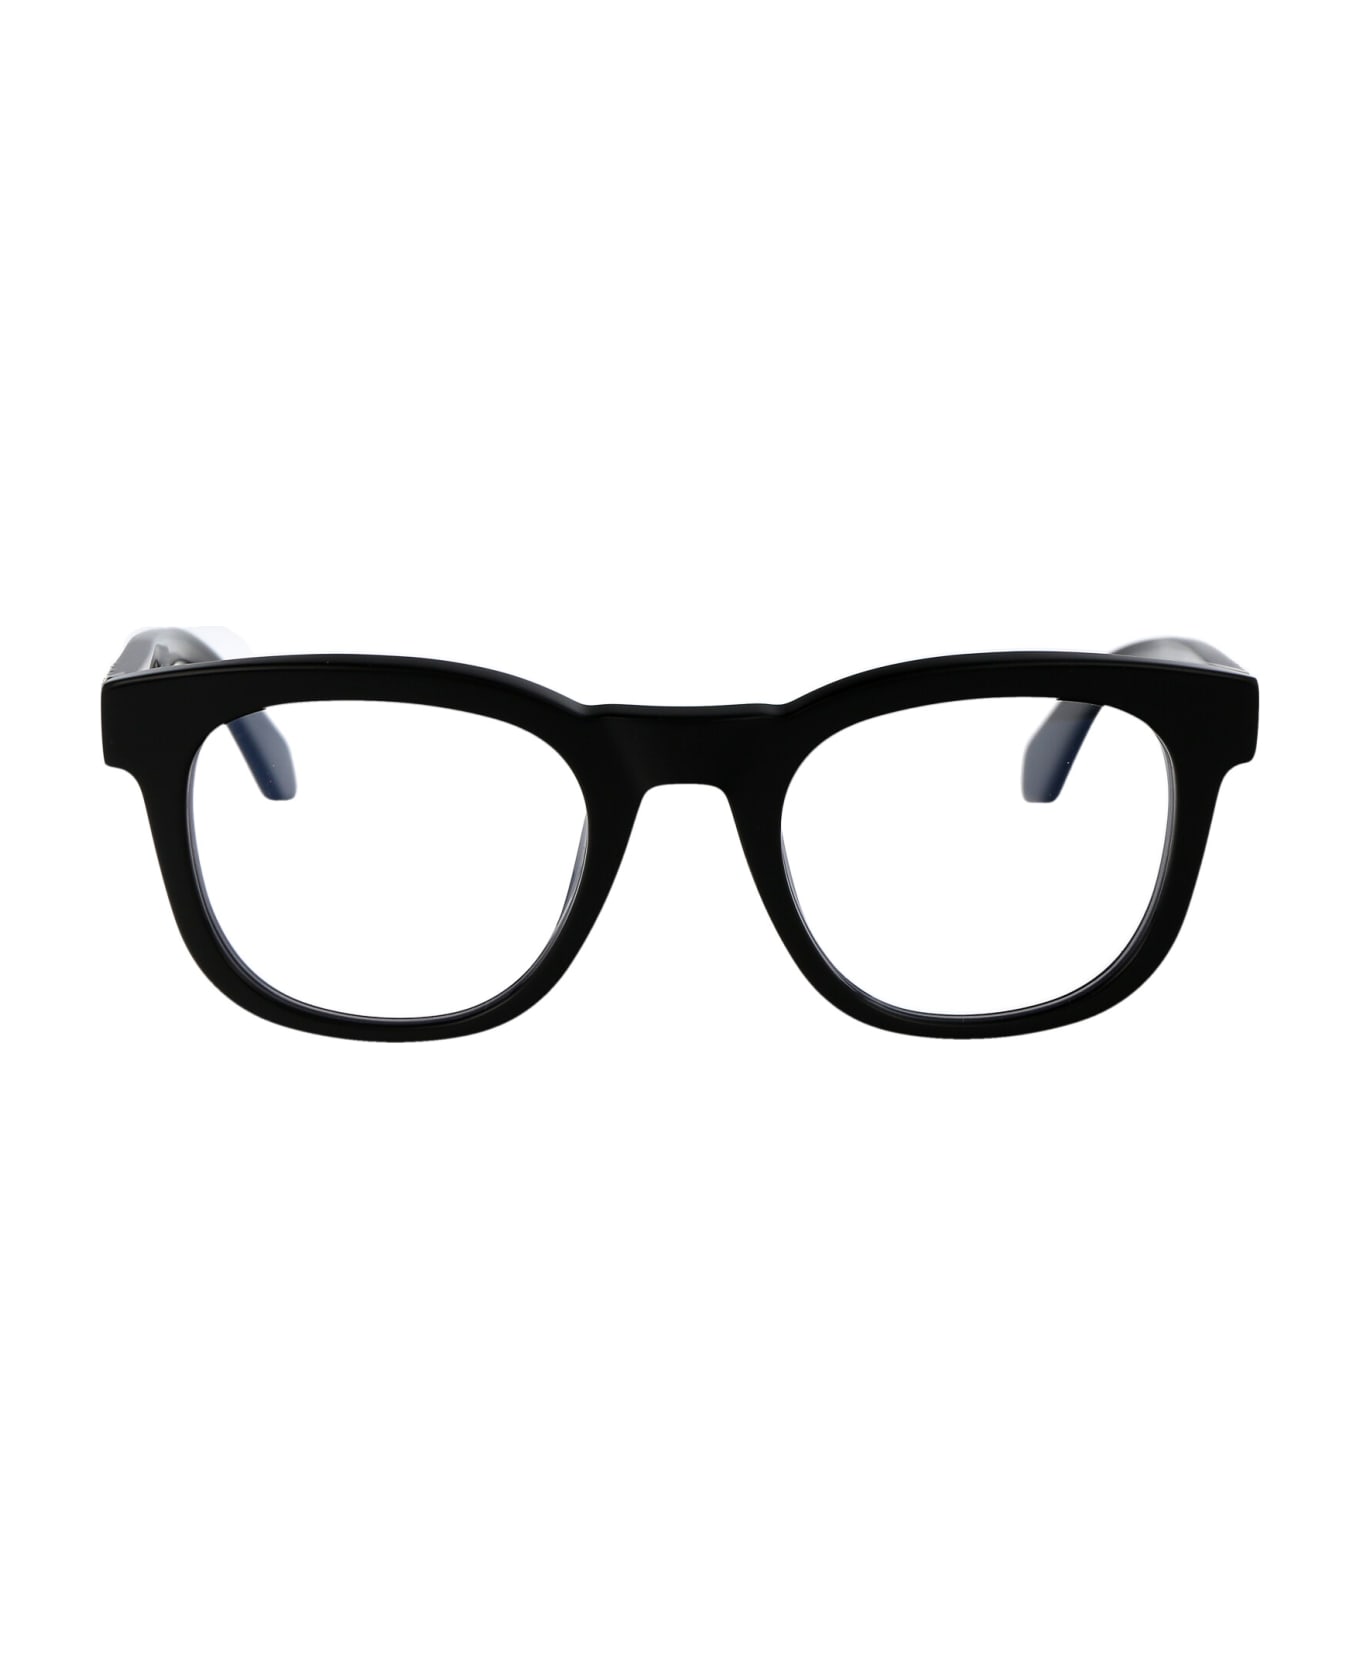 Off-White Optical Style 71 Glasses - 1000 BLACK アイウェア